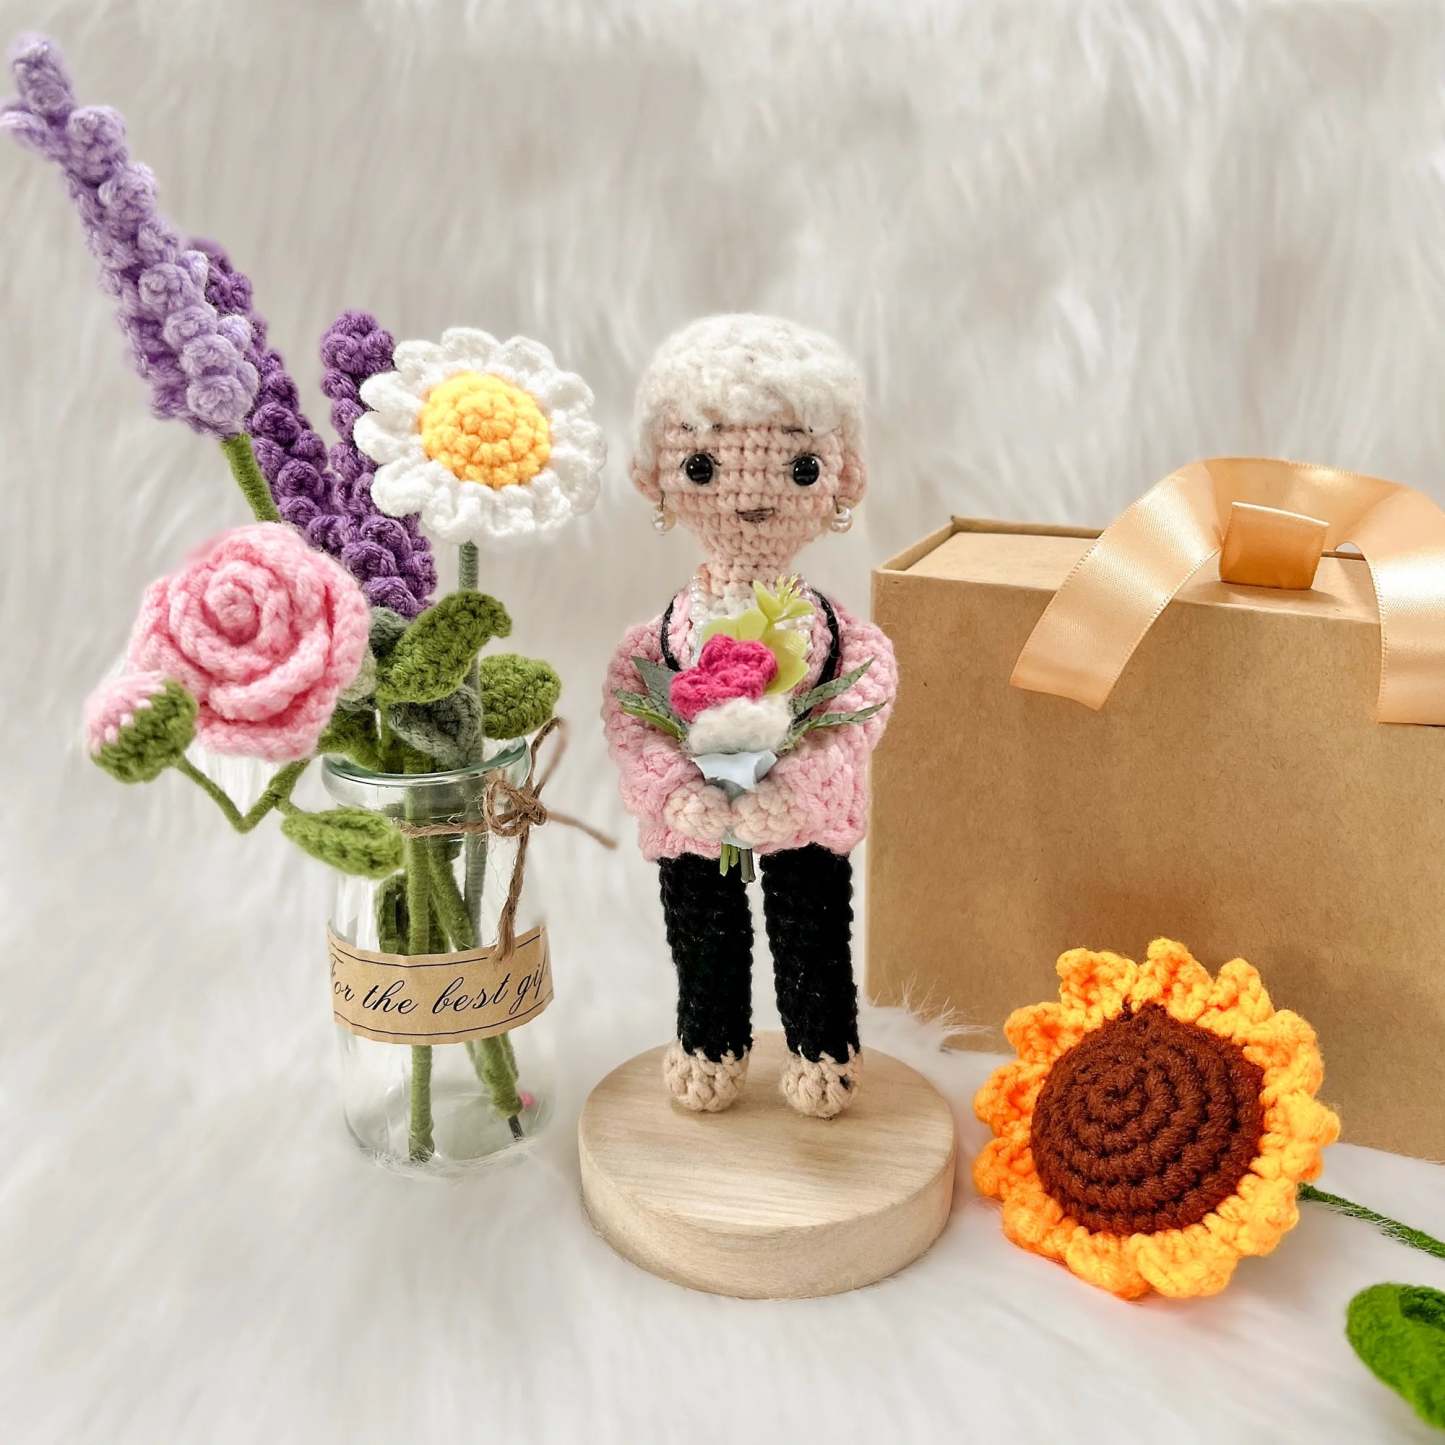 Grand-mère Crochet Doll Personnalisé Look Alike Portrait Doll Fête Des Grands-parents -